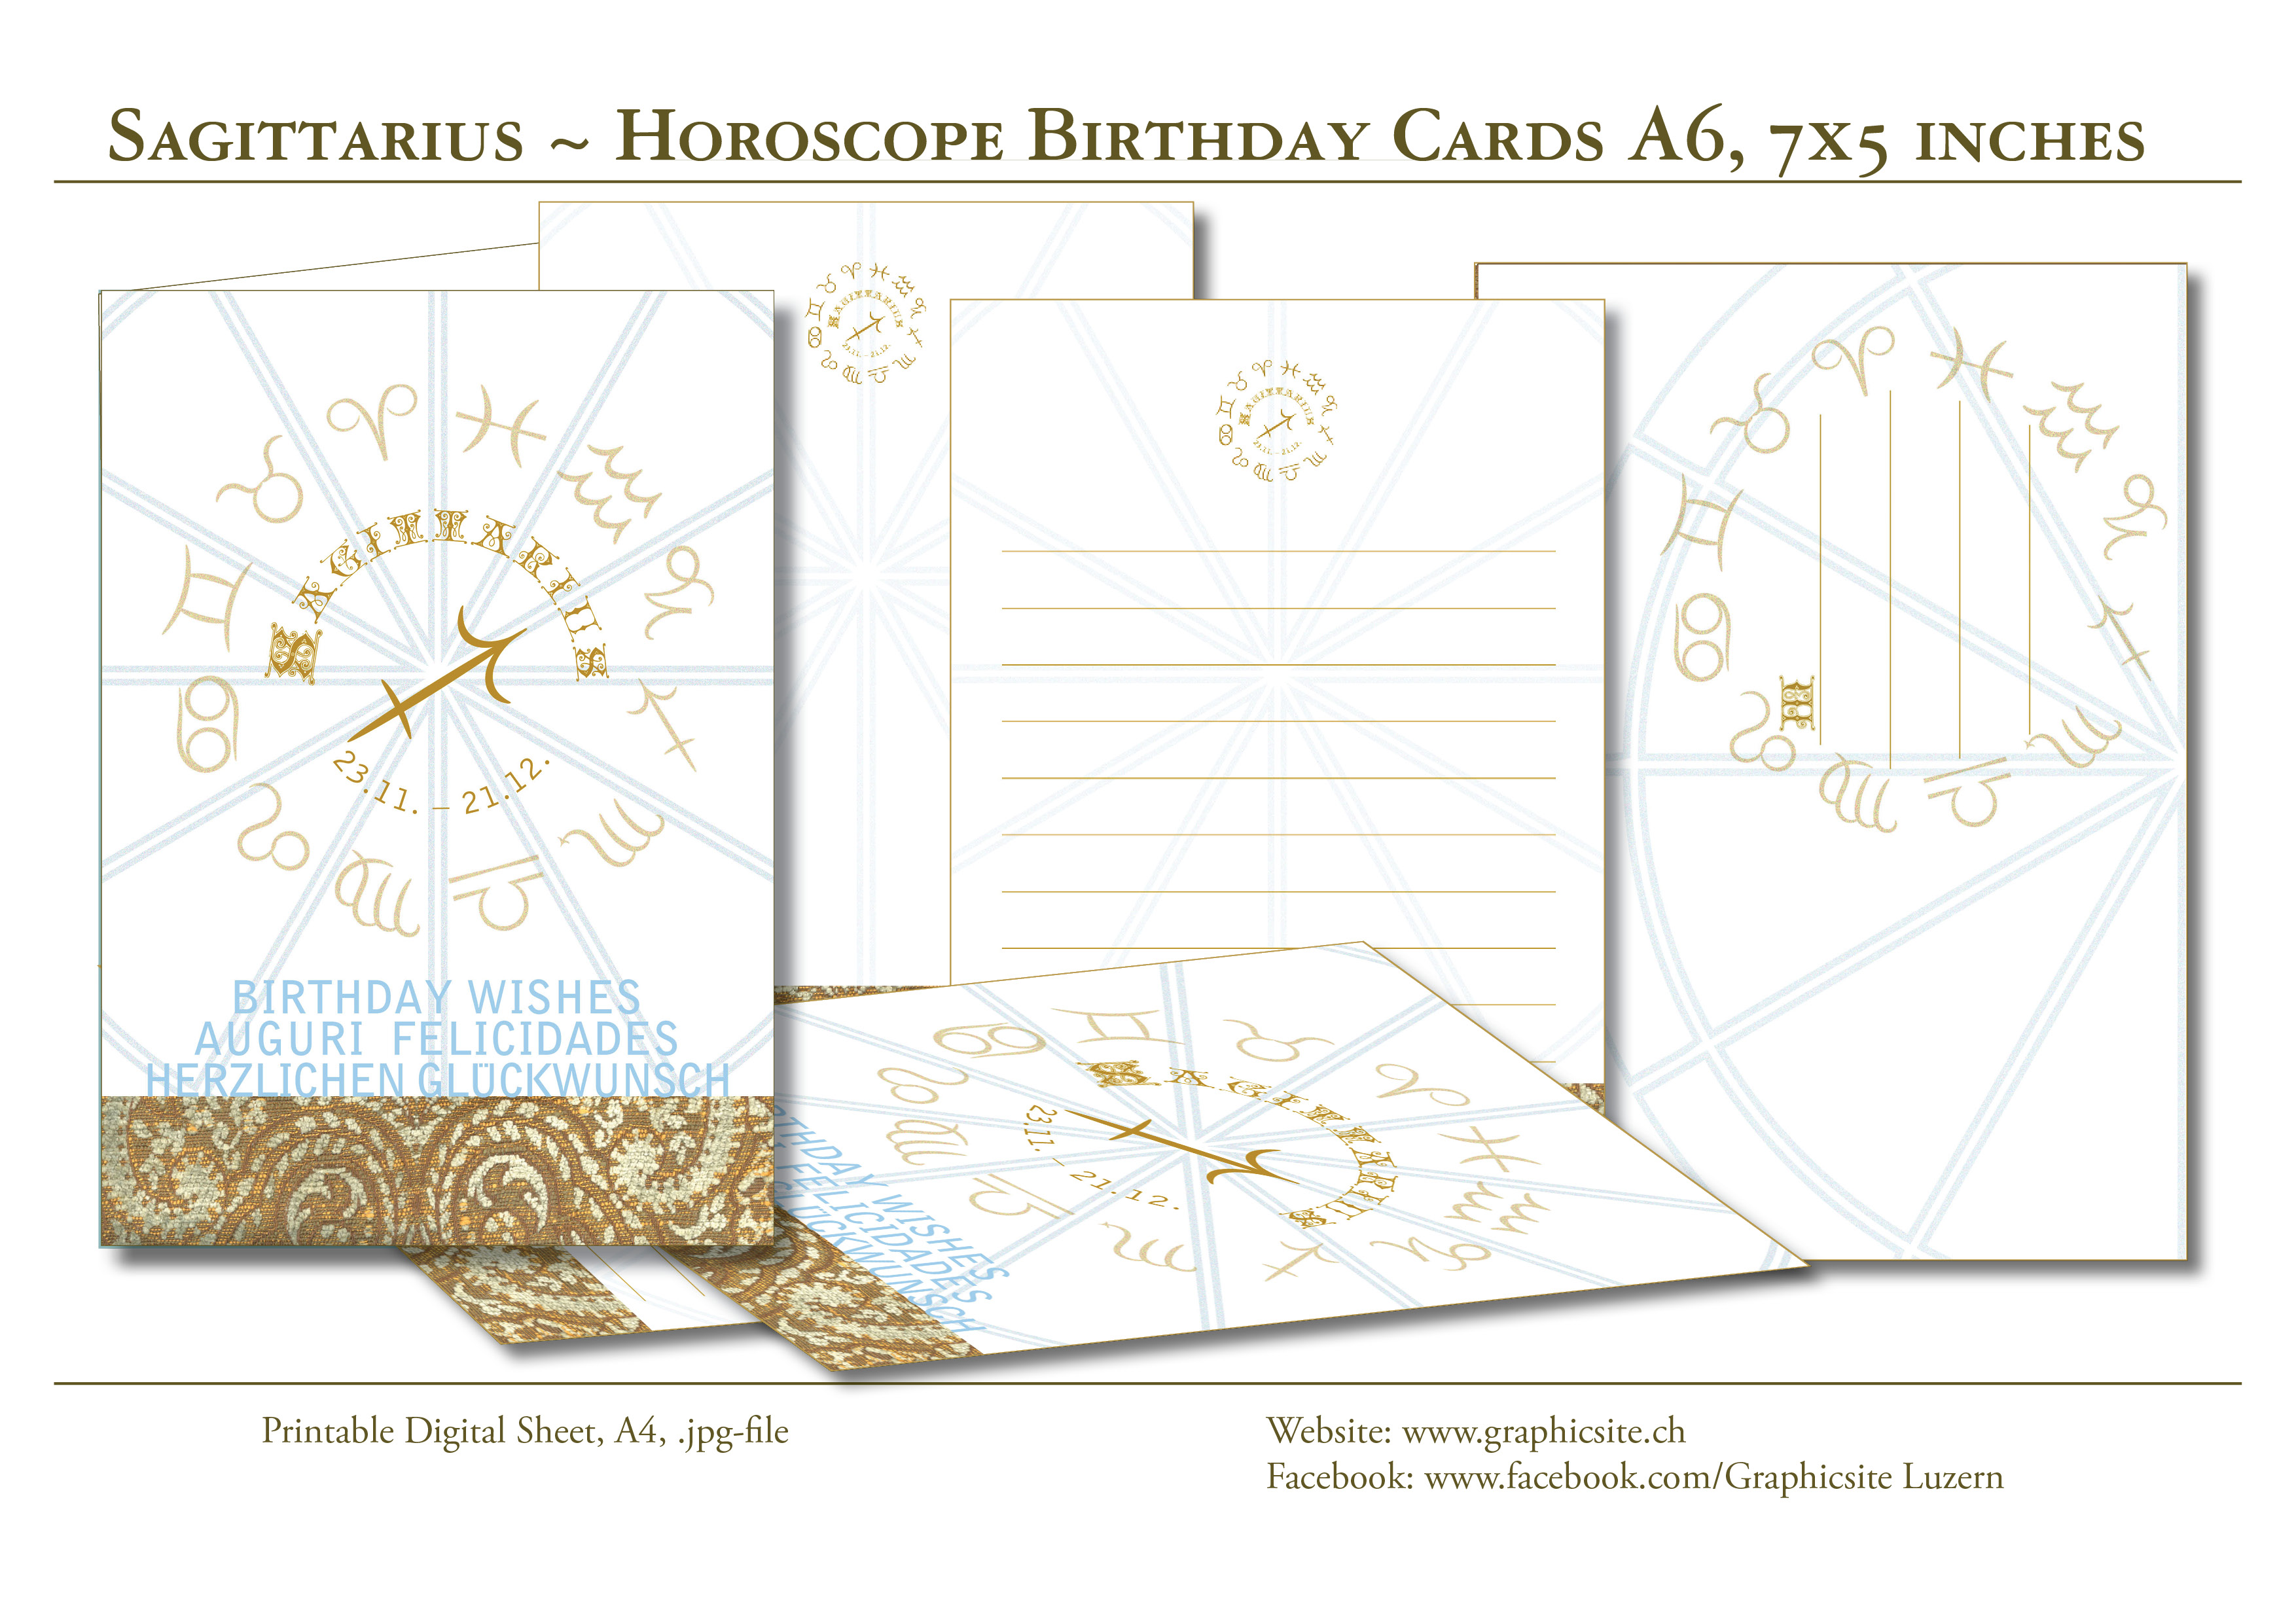 Druckbare Karten - selber drucken - Karten A6 - Grusskarten - Geburtstagskarten - Geschenkkarten - Horoskop - Sternzeichen - Schütze - Grafik Design Luzern, Grafiker Luzern, Schweiz